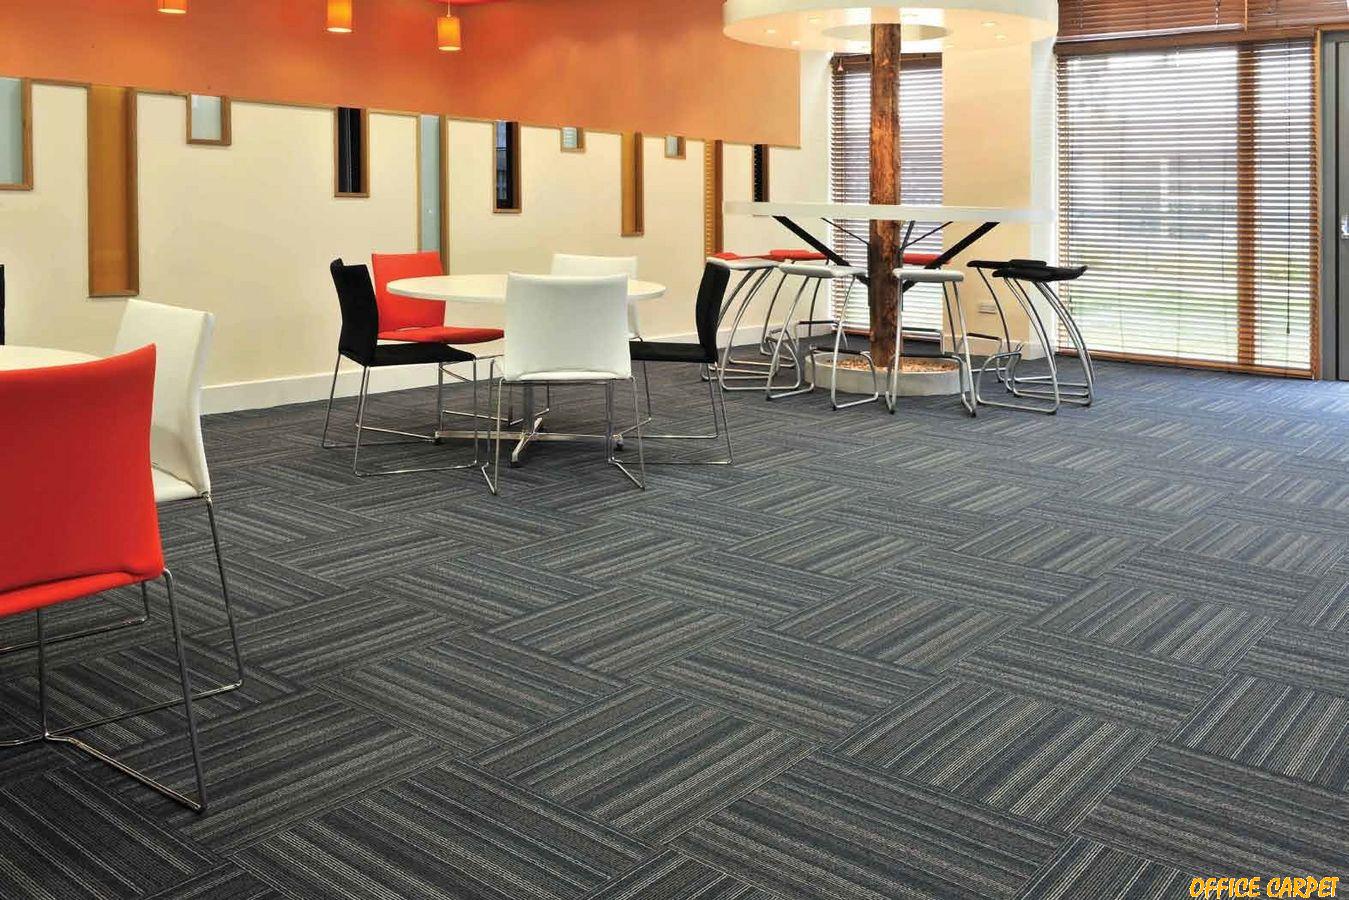 Office Carpet Tiles Dubai, Abu Dhabi & UAE - Office Carpet Tiles for Sale